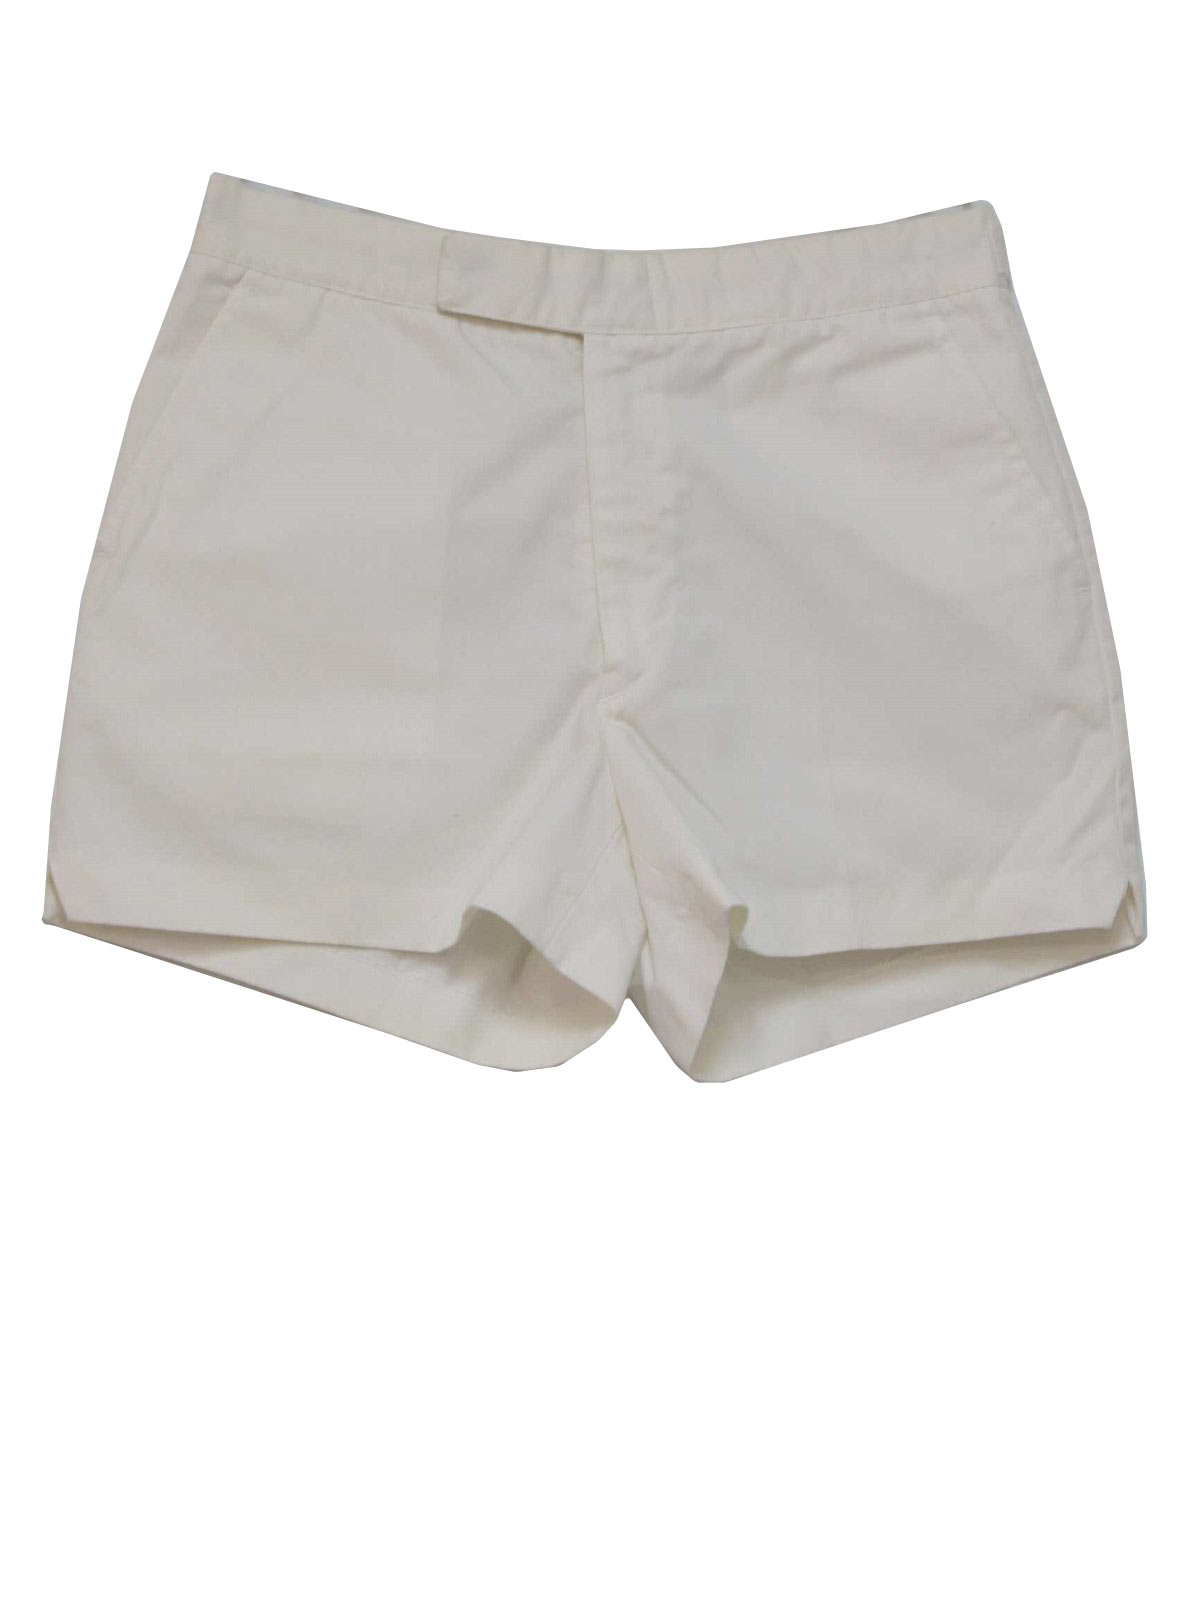 Vintage Allen A 80's Shorts: 80s -Allen A- Mens off white thick cotton ...